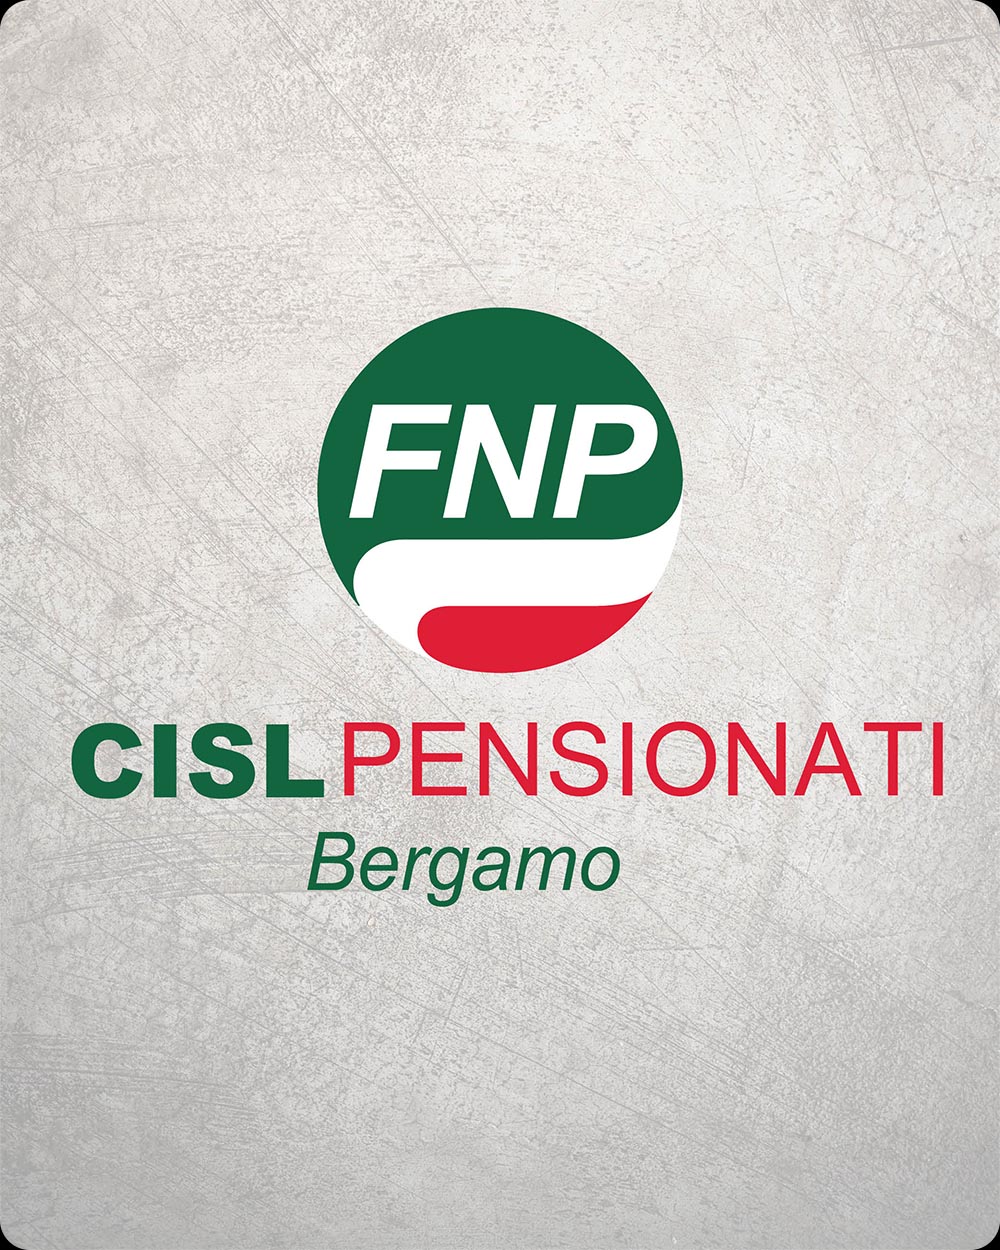 FNP Cisl Pensionati Bergamo